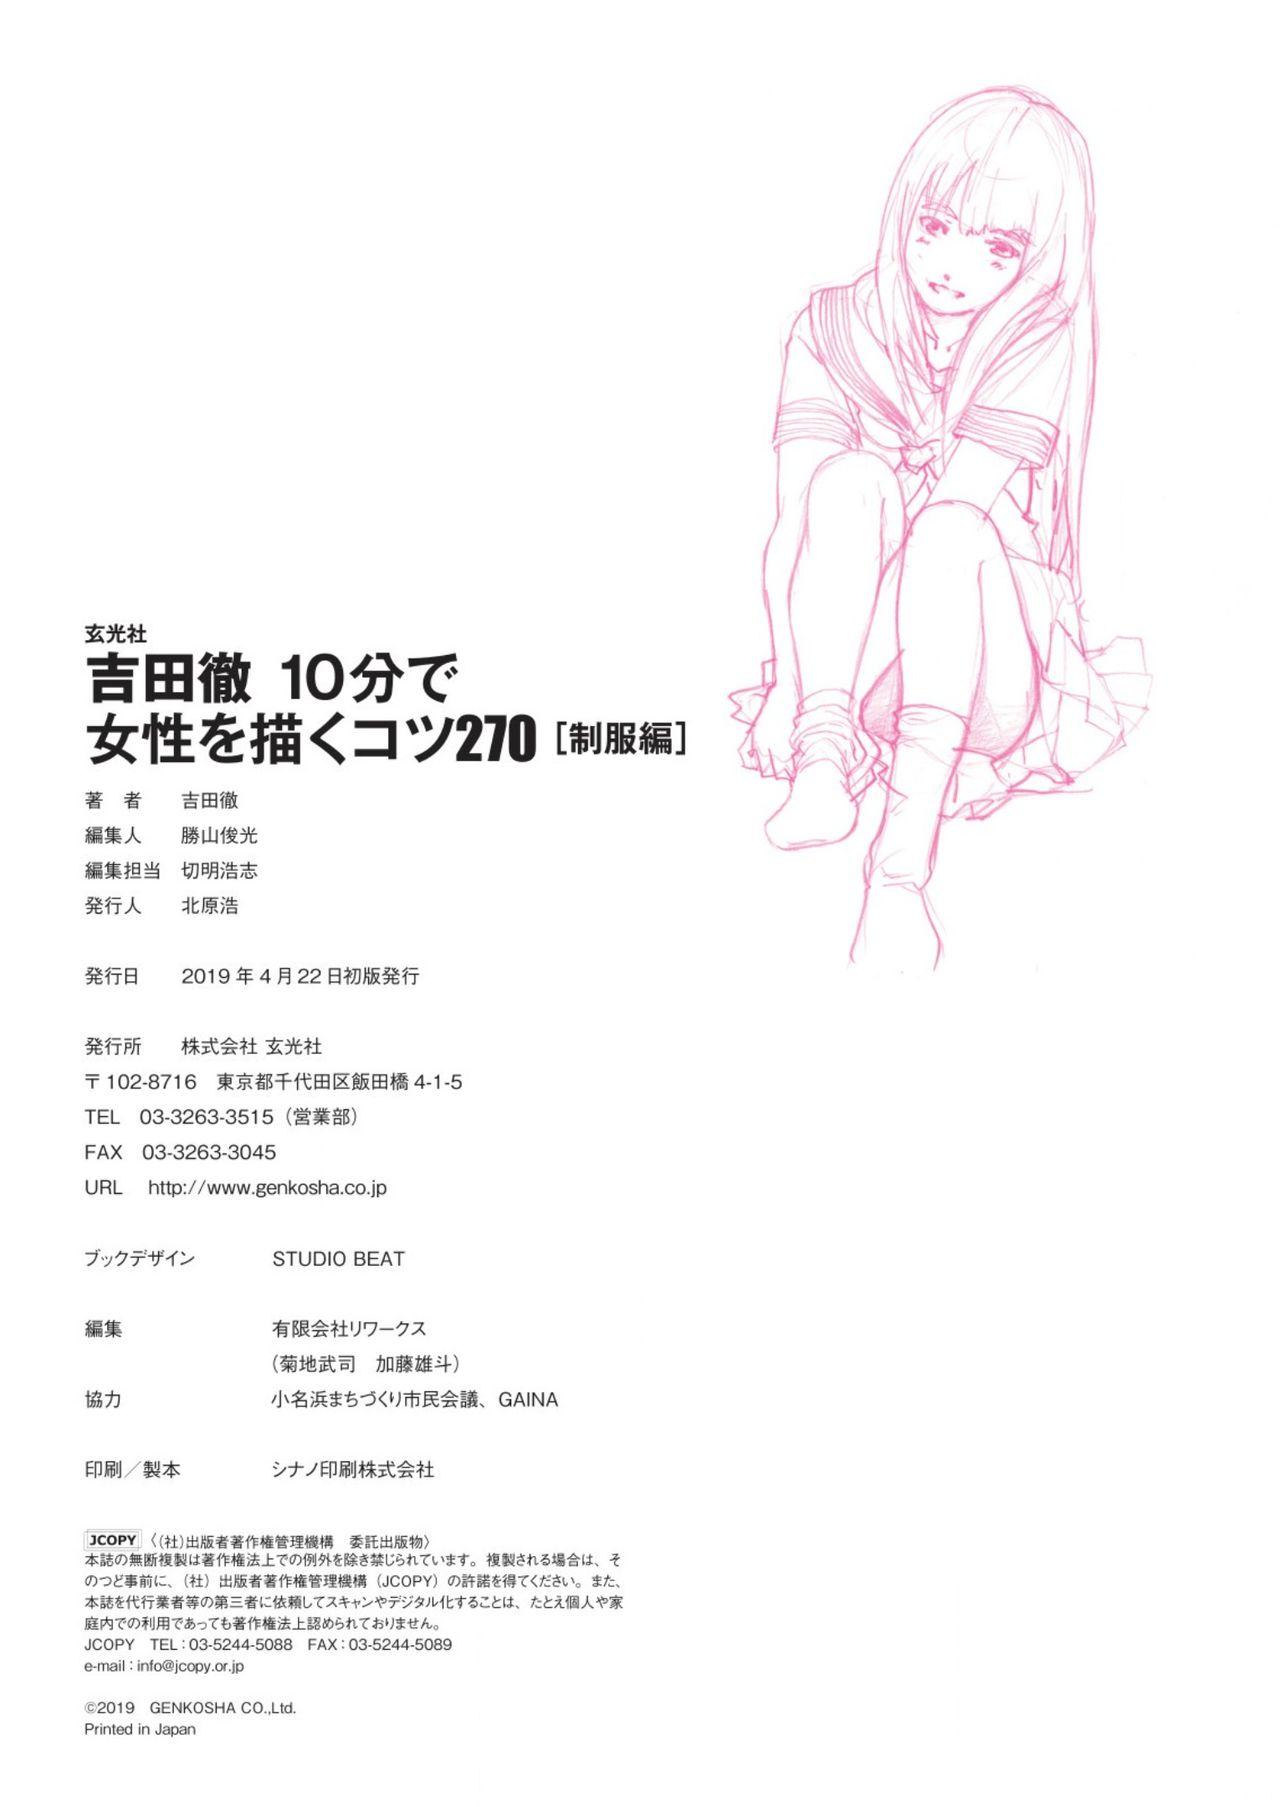 Toru Yoshida Tips for drawing women in 10 minutes 270 Uniforms 157